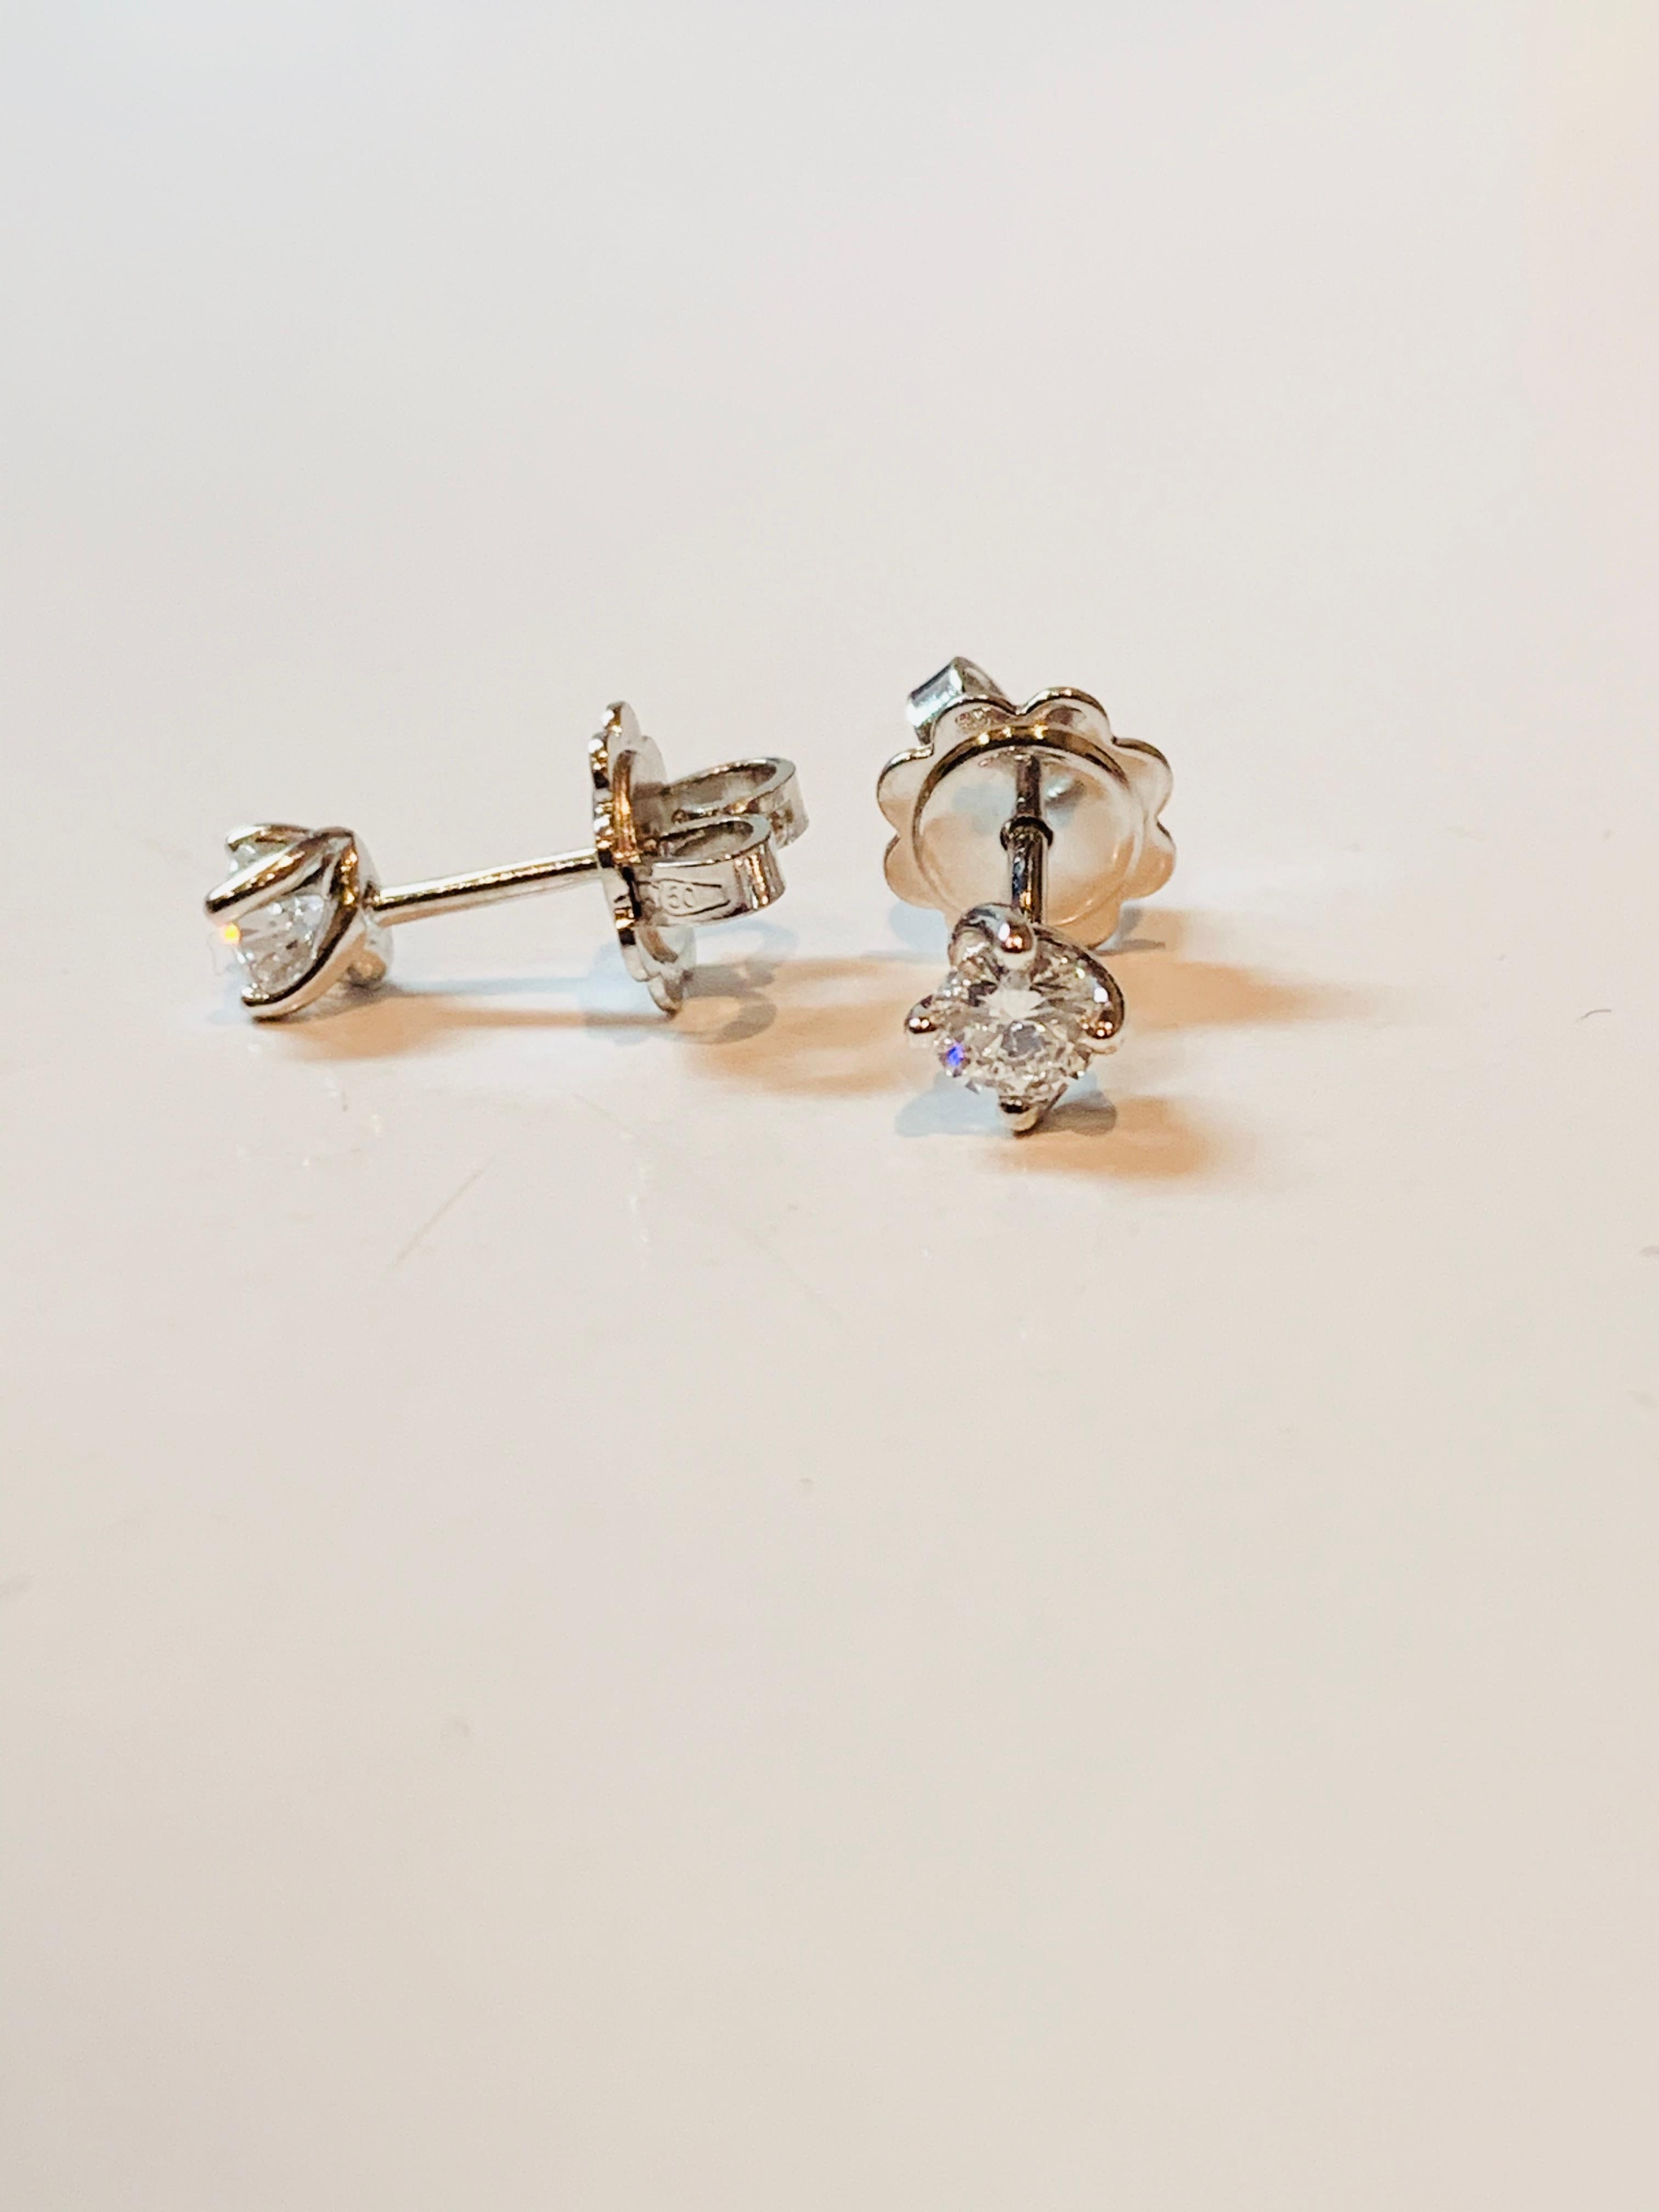 Round Cut HRD Certified 0.40 Carat Flower Diamonds Set in 18Kt White Gold Stud Earrings